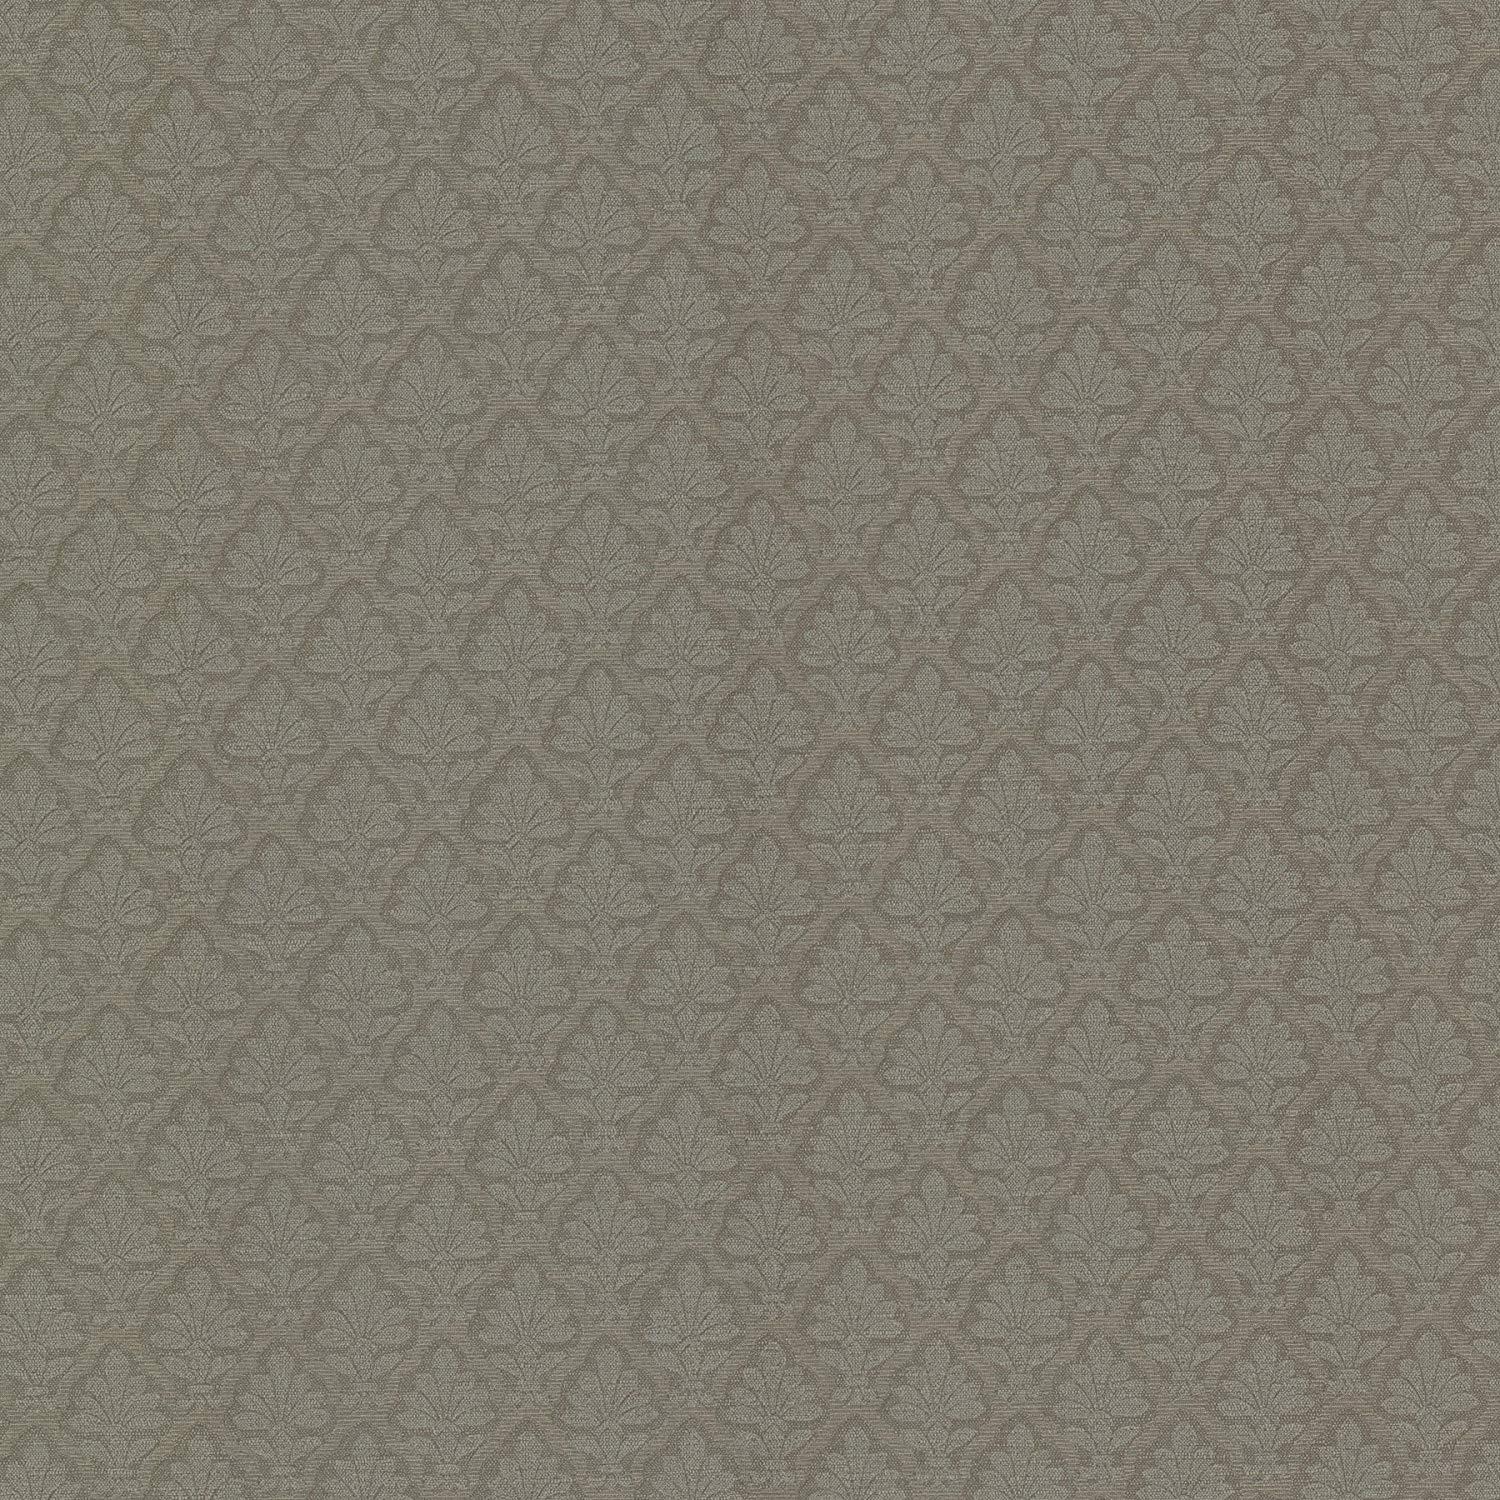 Mirage 2601 20811 Lowell Fleur De Lis Wallpaper, Taupe